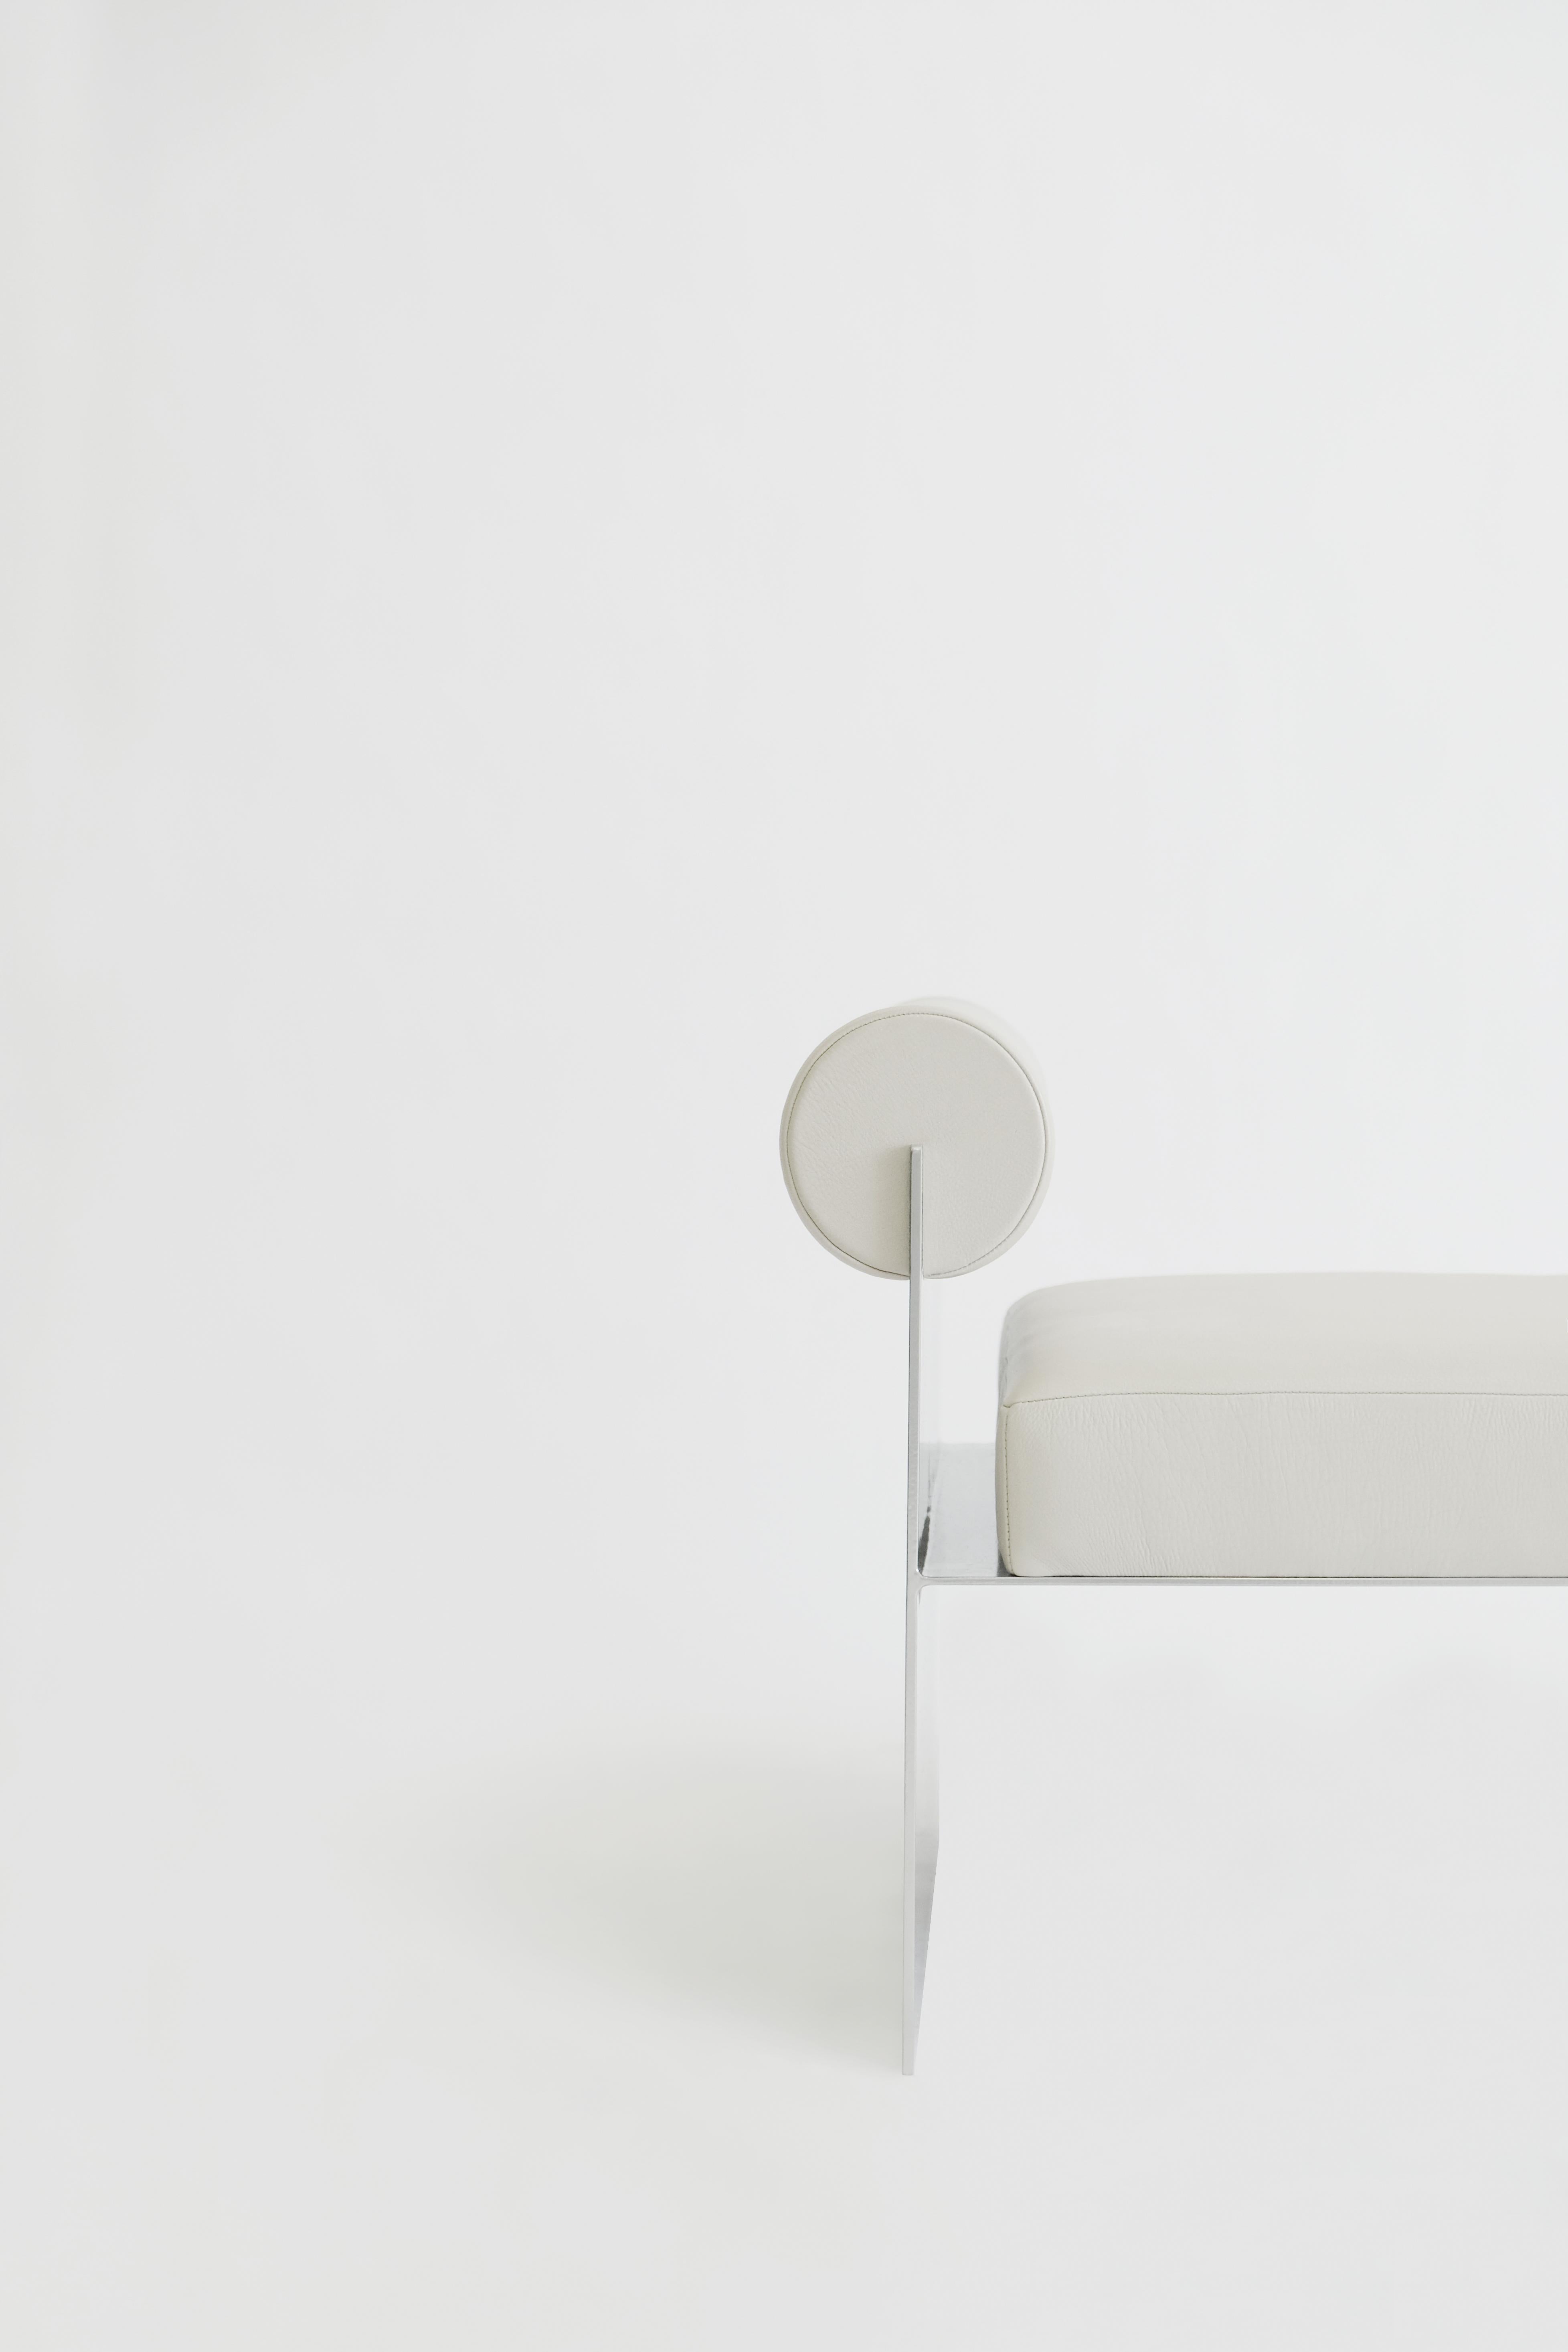 Loungesessel aus Bauklötzen: Eine Illusion, die durch ihr Design mit positiven und negativen Formen spielt. Die weiße Version ist aus Leder und einem Metallgestell gefertigt.
  
Building Blocks Kollektion
Eine Reihe von monochromen Sitzgruppen,